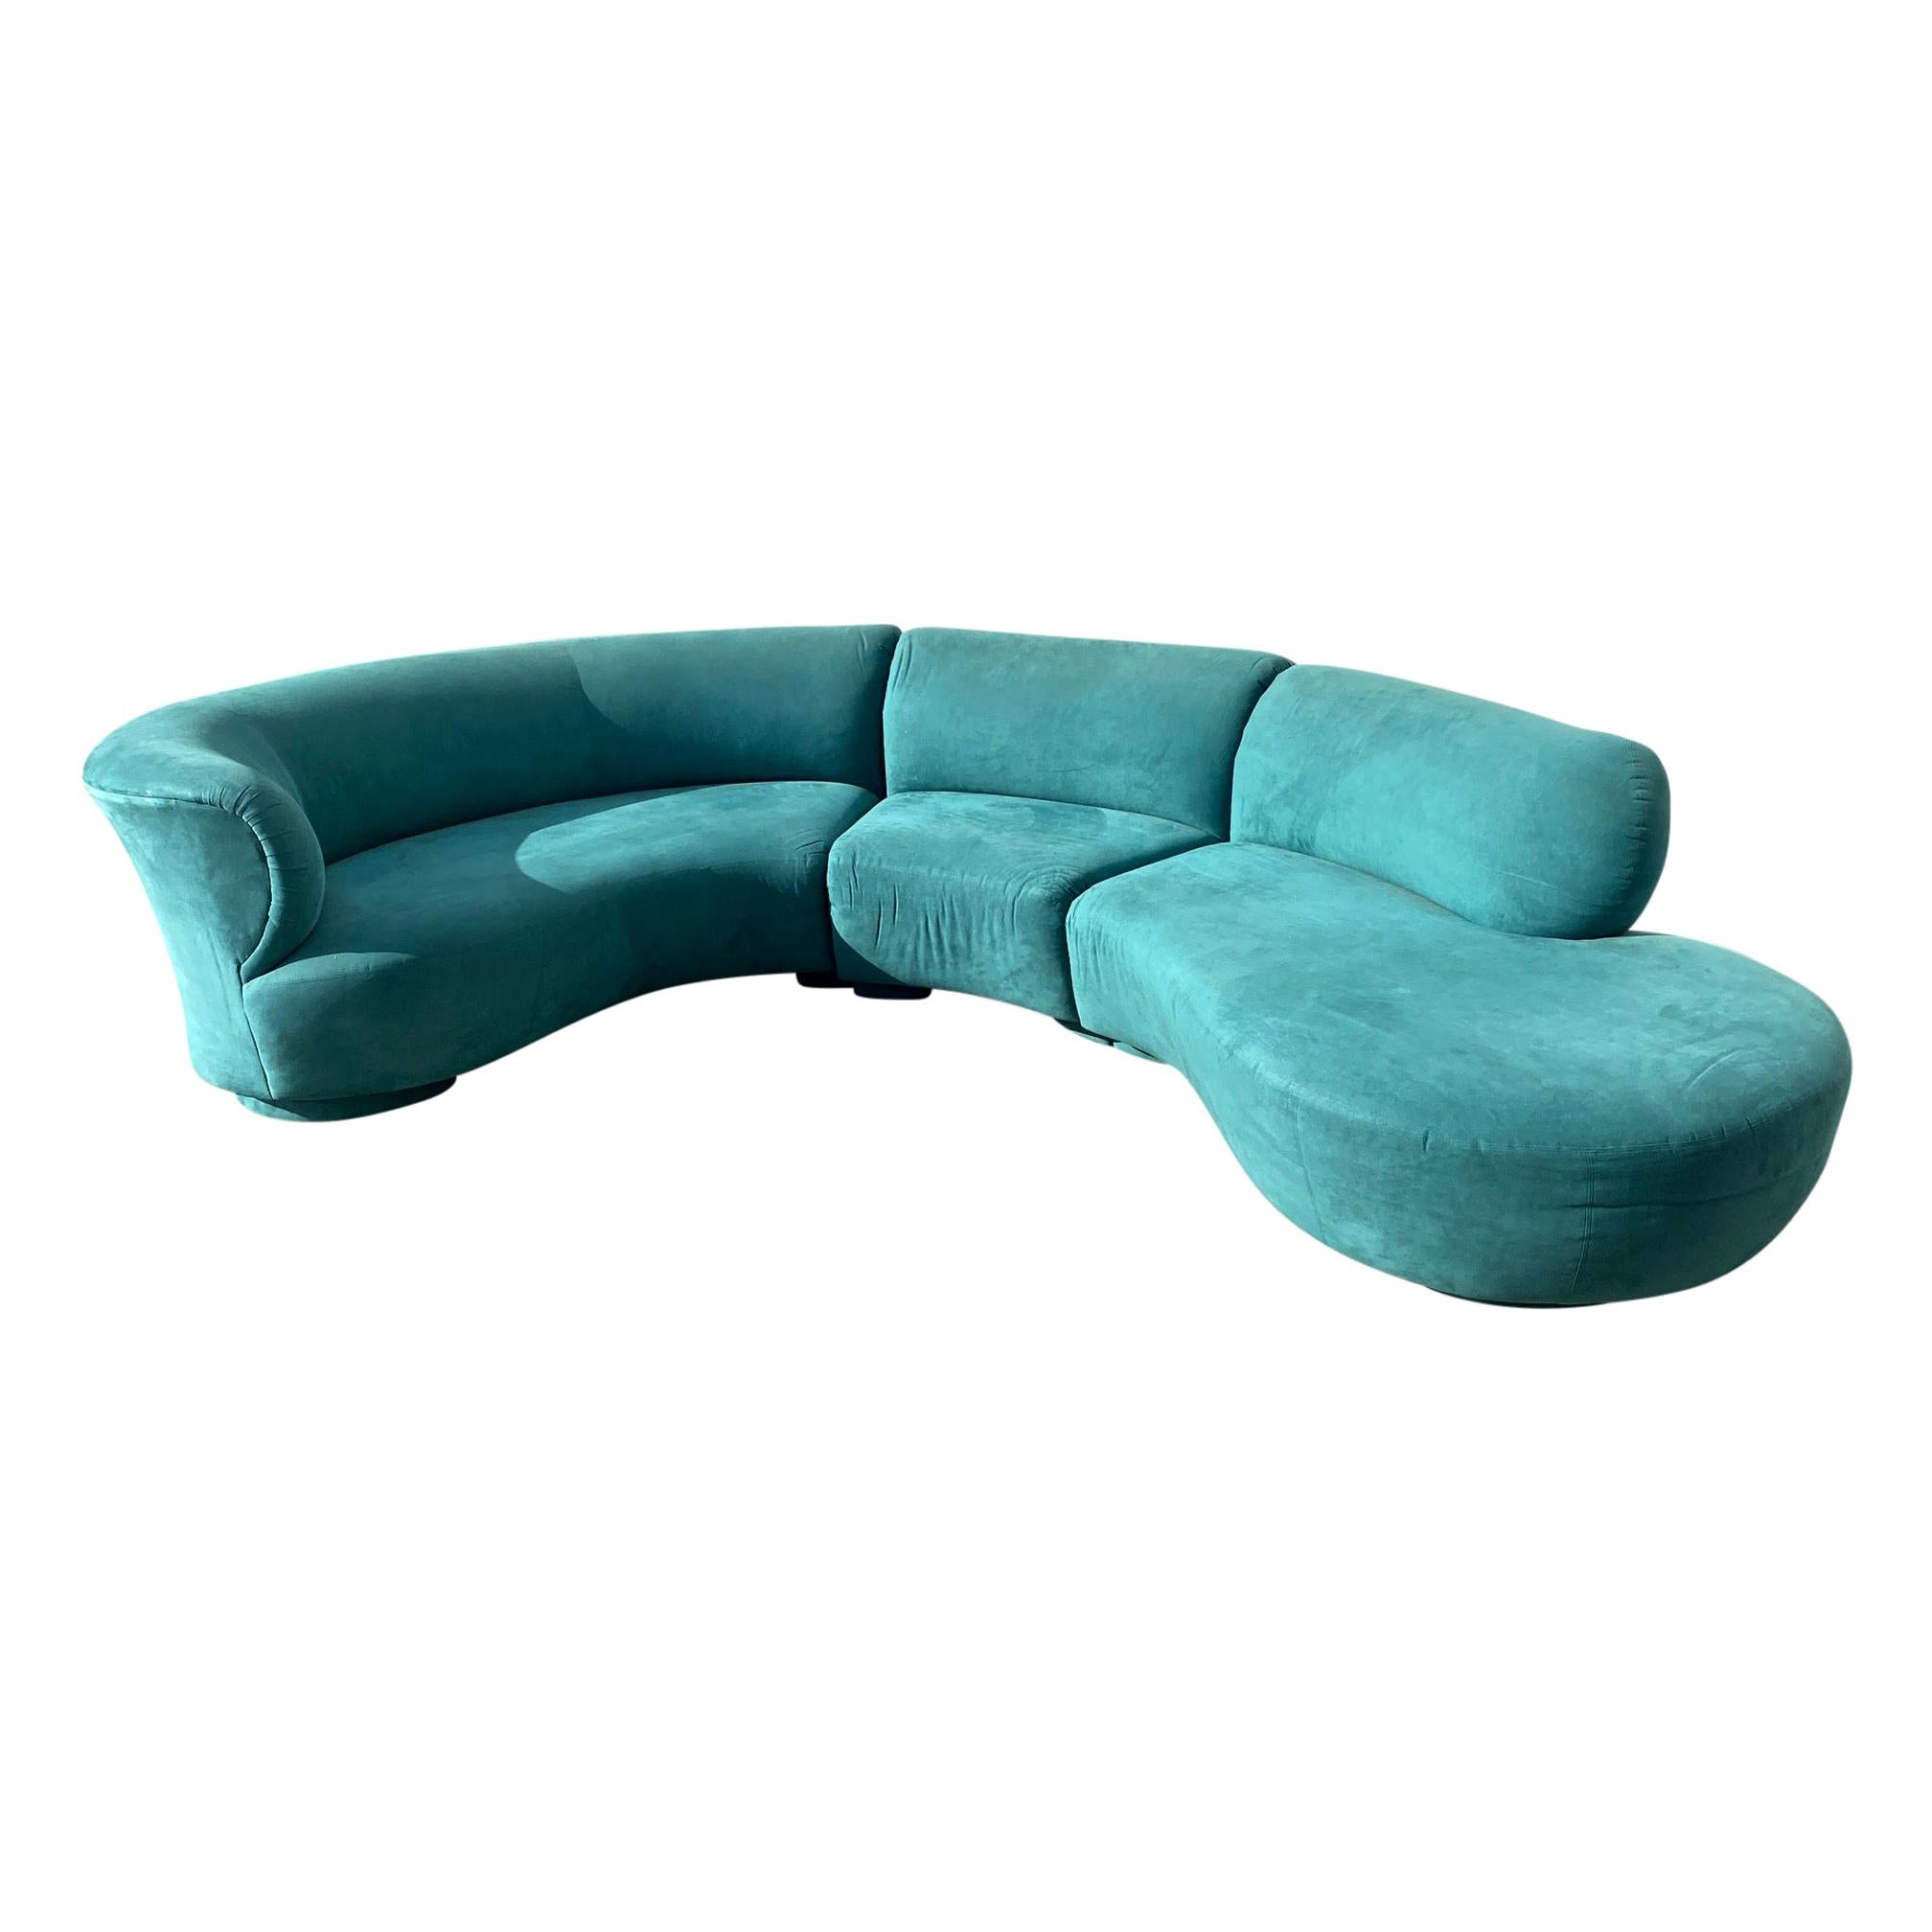 Vladimir Kagan Curved Cloud Sofa Sectional 3 Piece